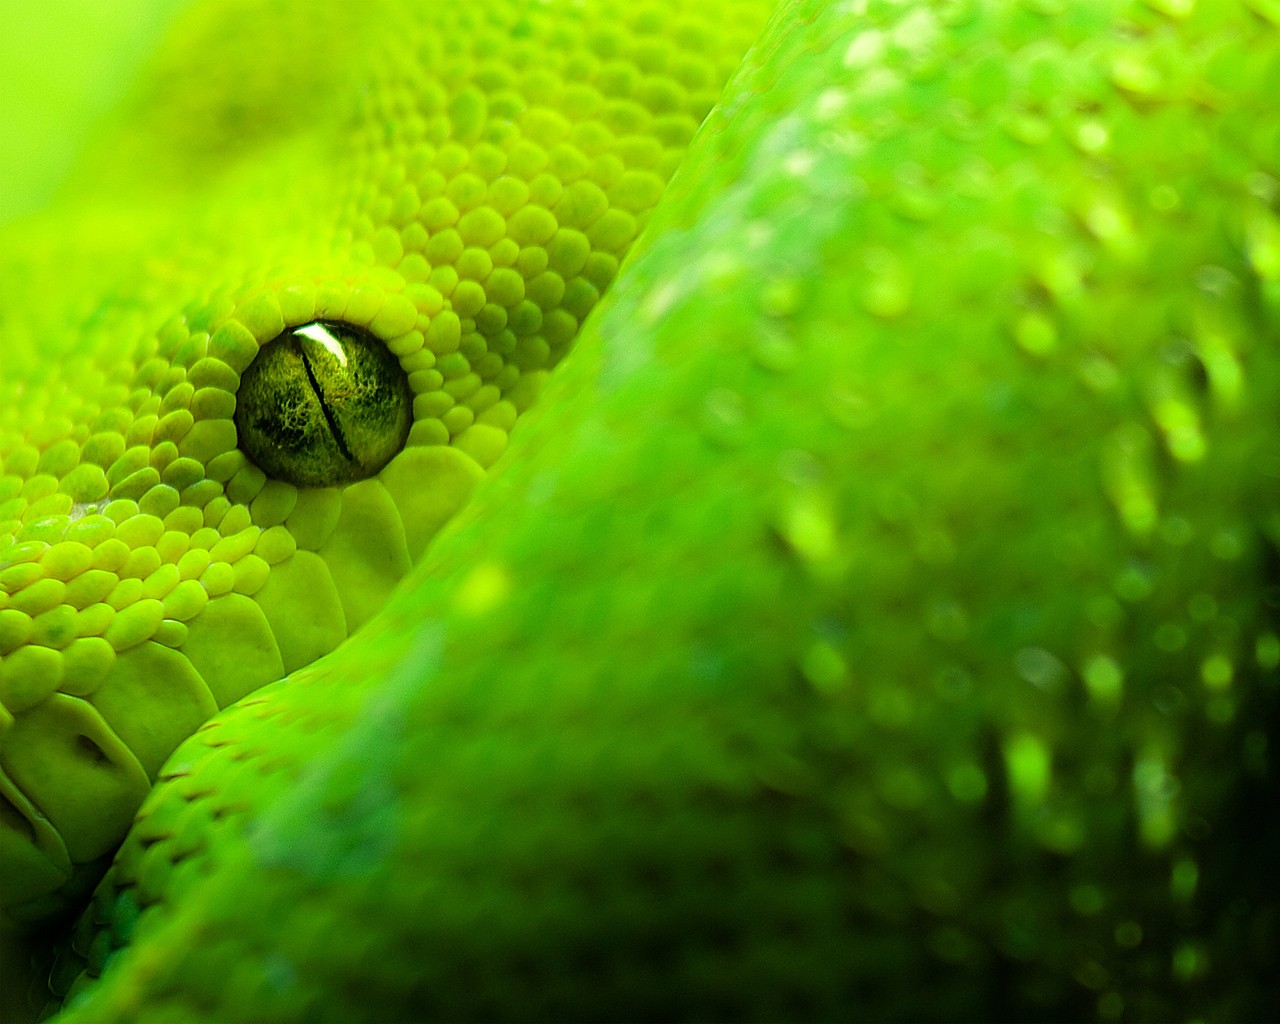 General 1280x1024 snake animals reptiles closeup animal eyes